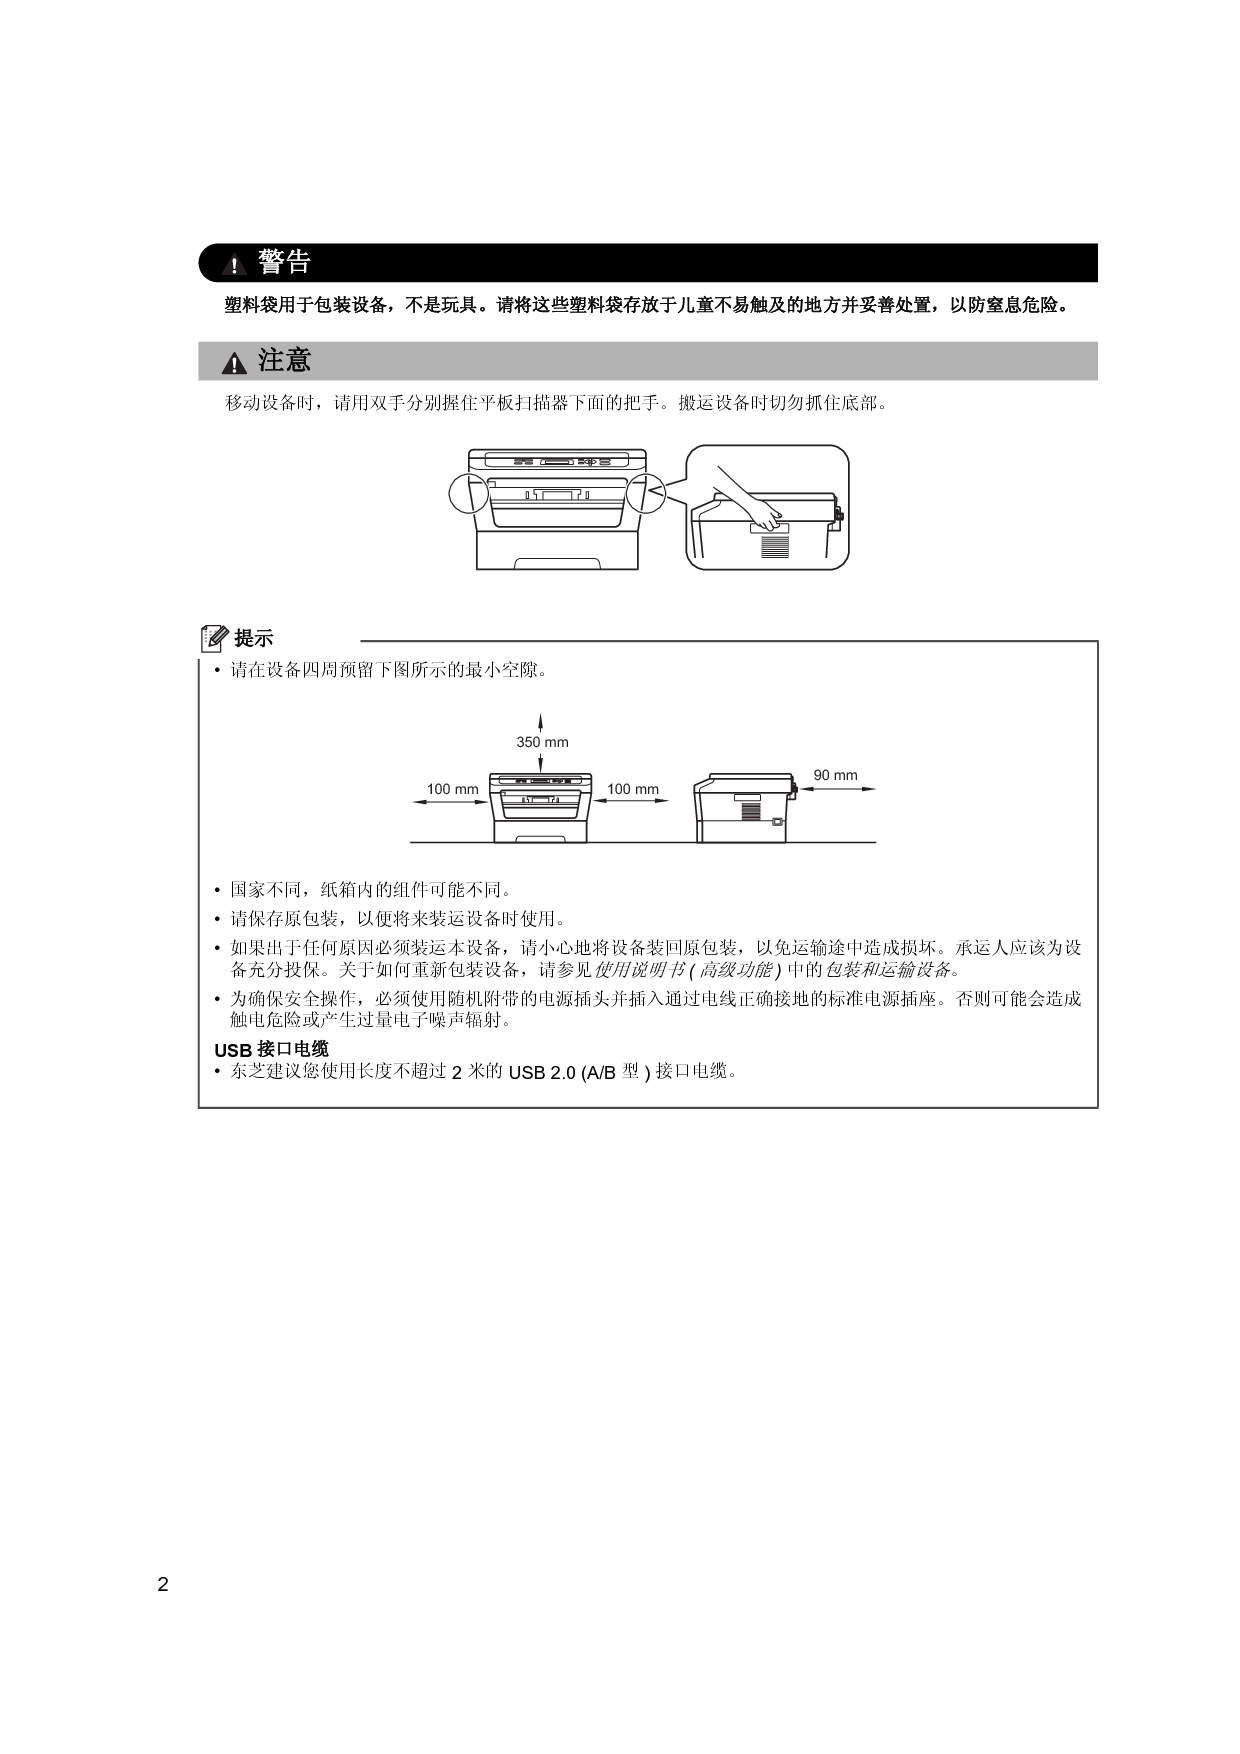 东芝 Toshiba DP-2400, e-STUDIO 240s 基础使用手册 第1页